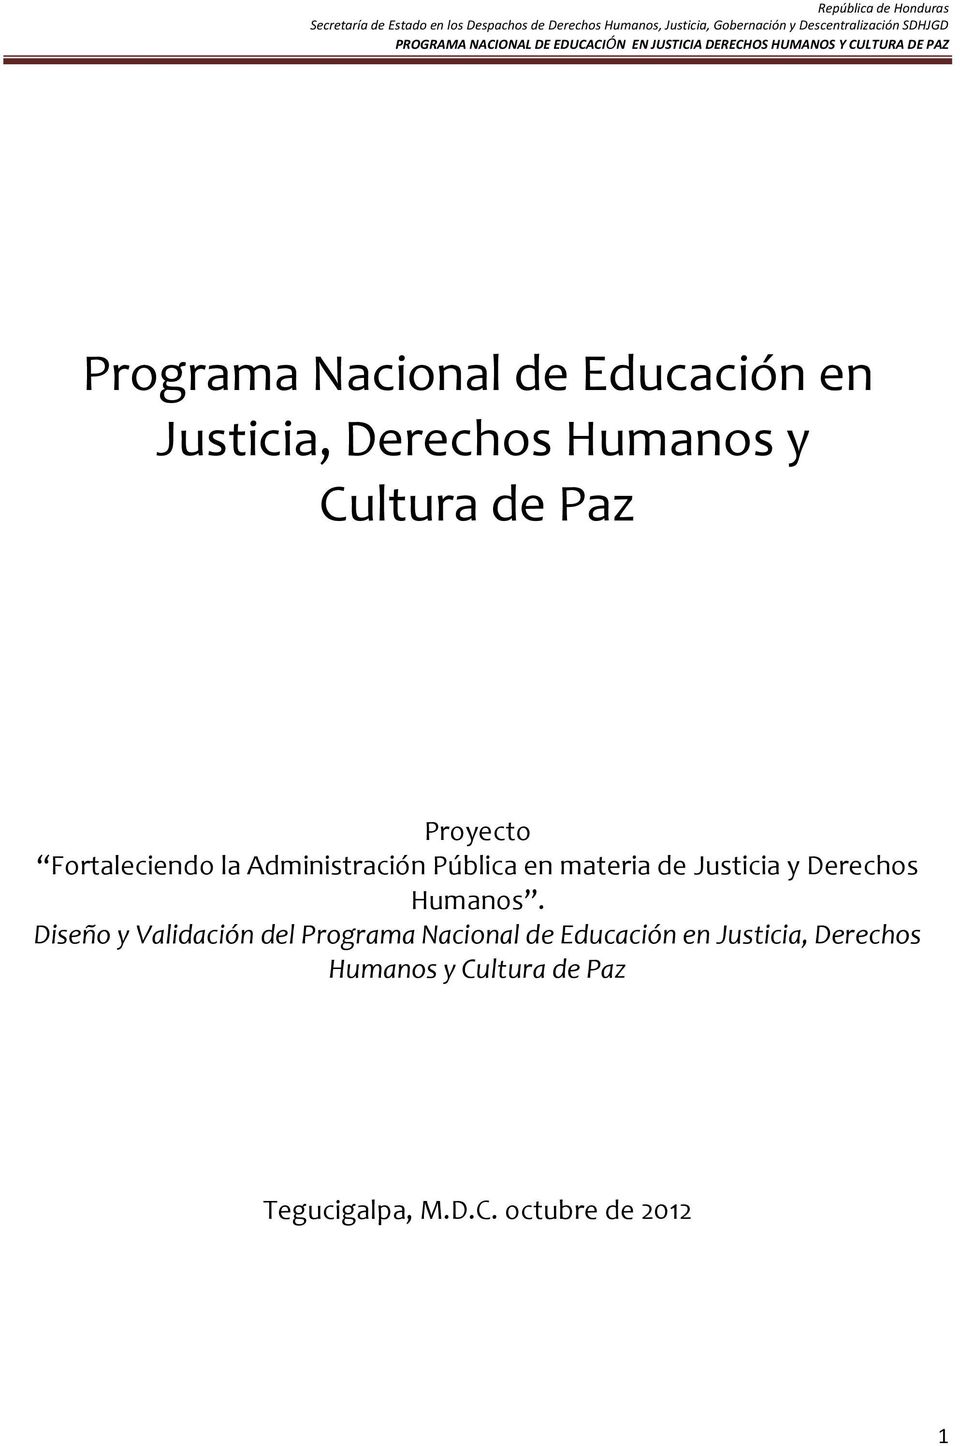 Derechos Humanos. Diseño y Validación del  Tegucigalpa, M.D.C.